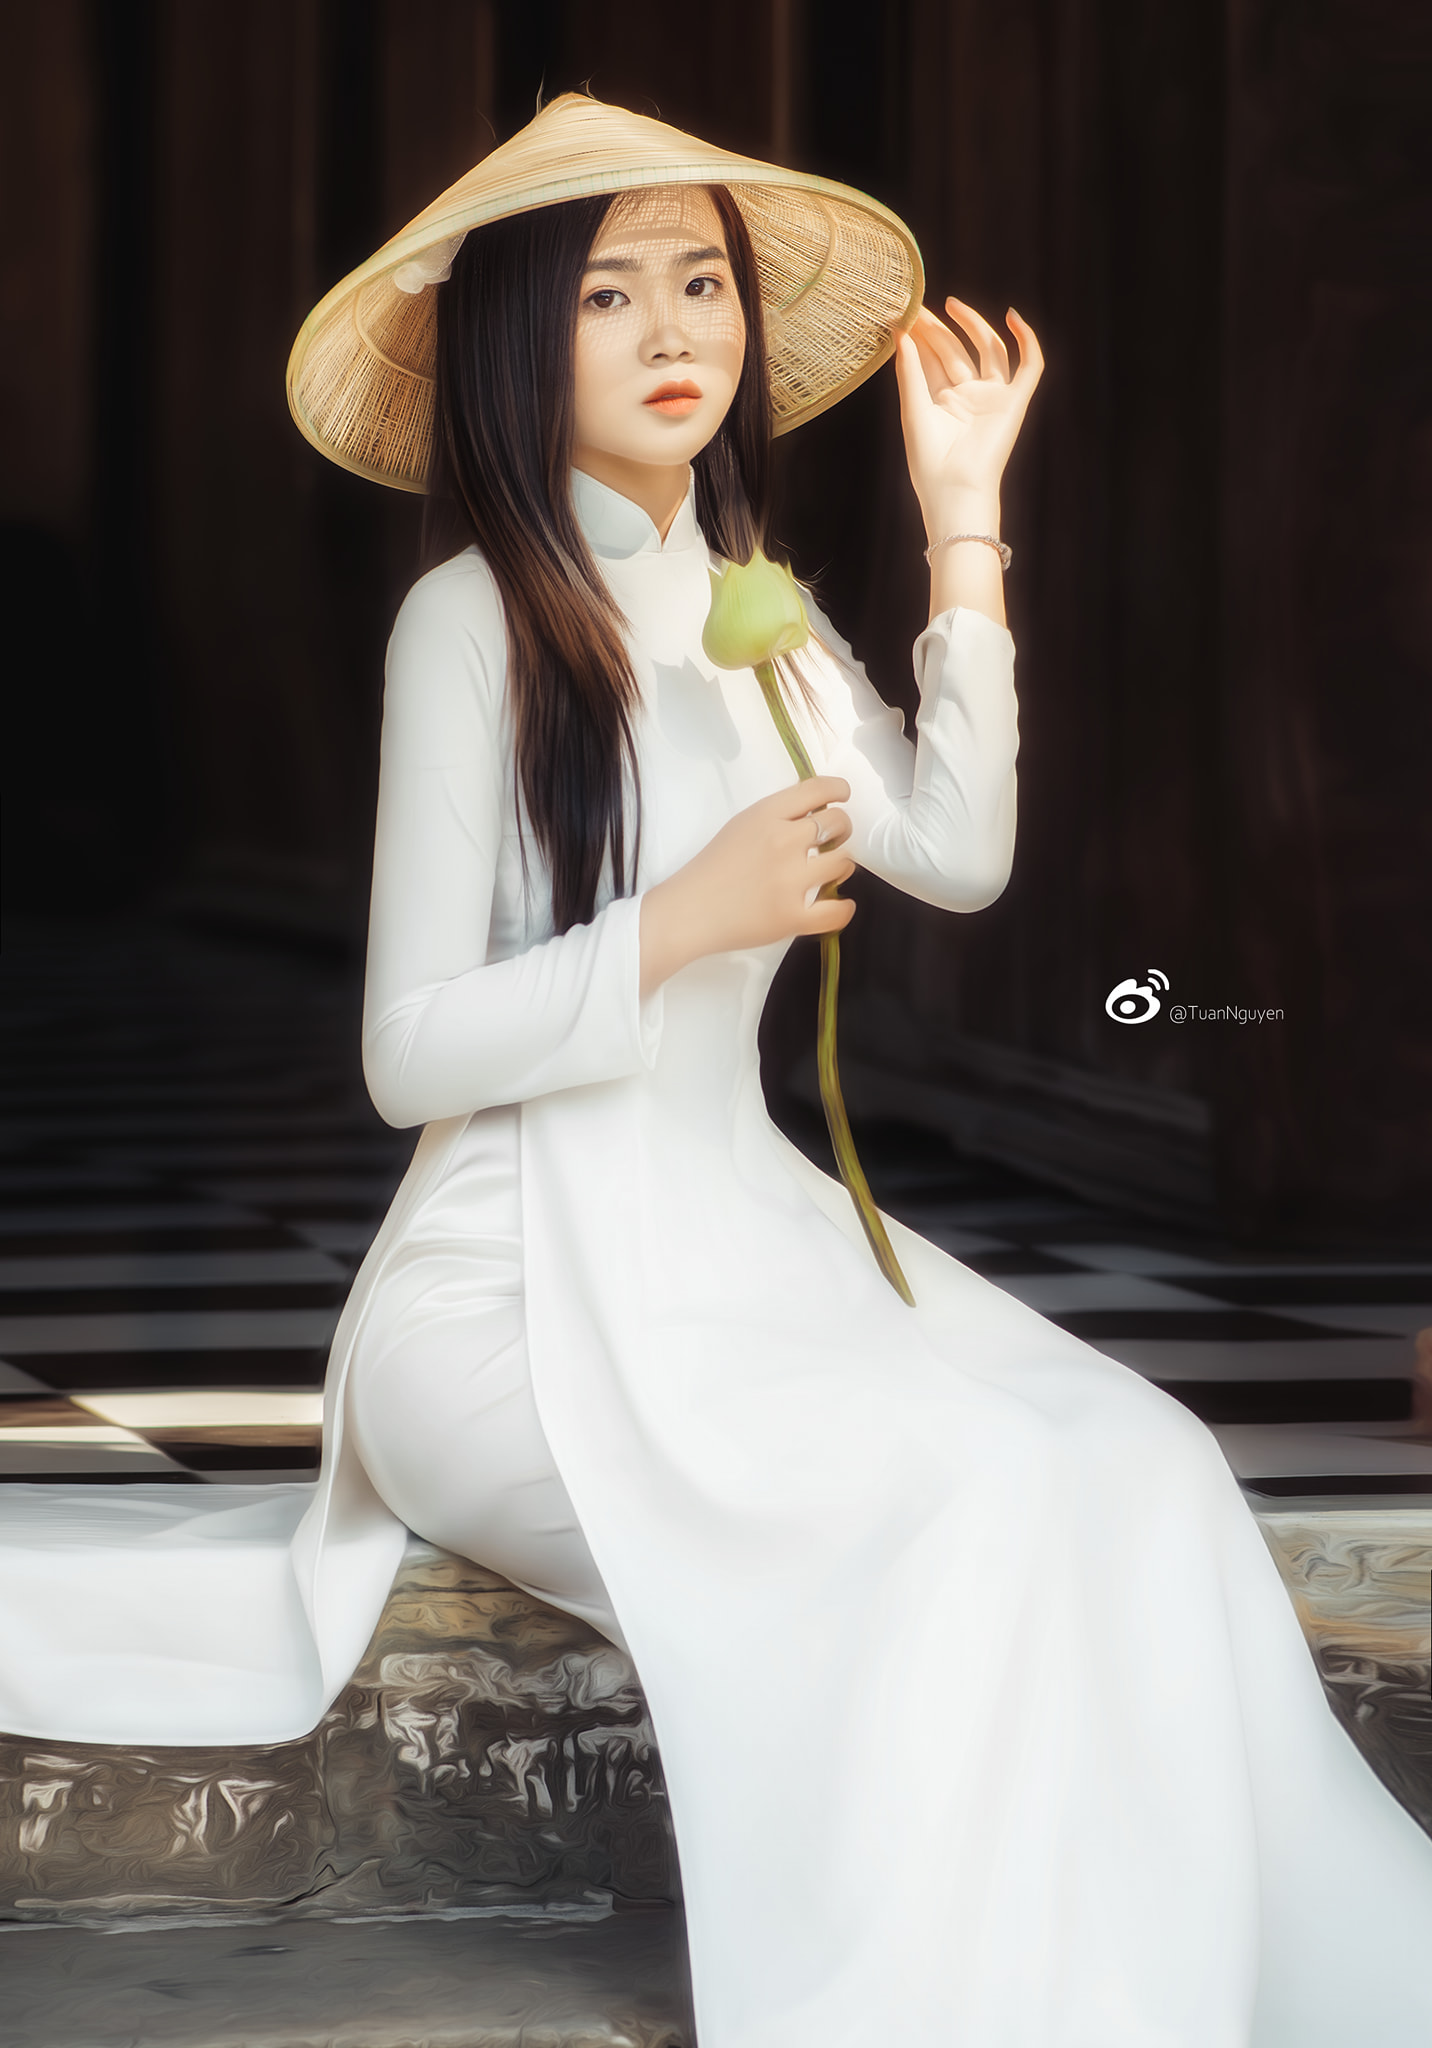 Áo dài cùng nón lá luôn là hình ảnh đẹp nhất của người con gái Việt